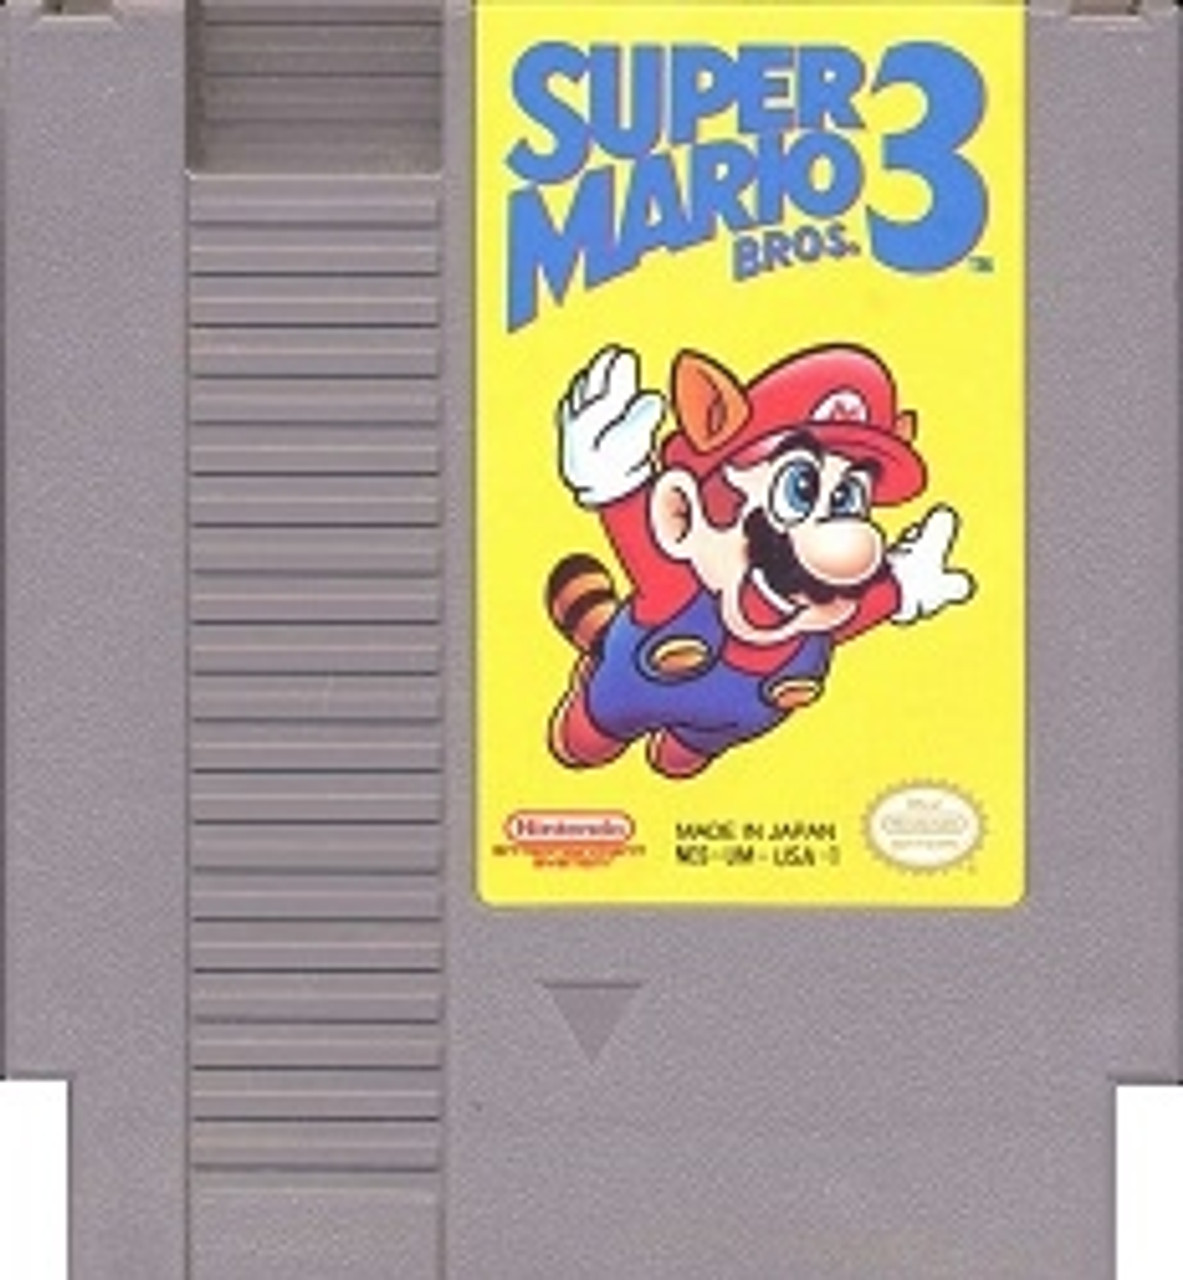 Super Mario Bros 3 Nintendo Nes Original Game For Sale